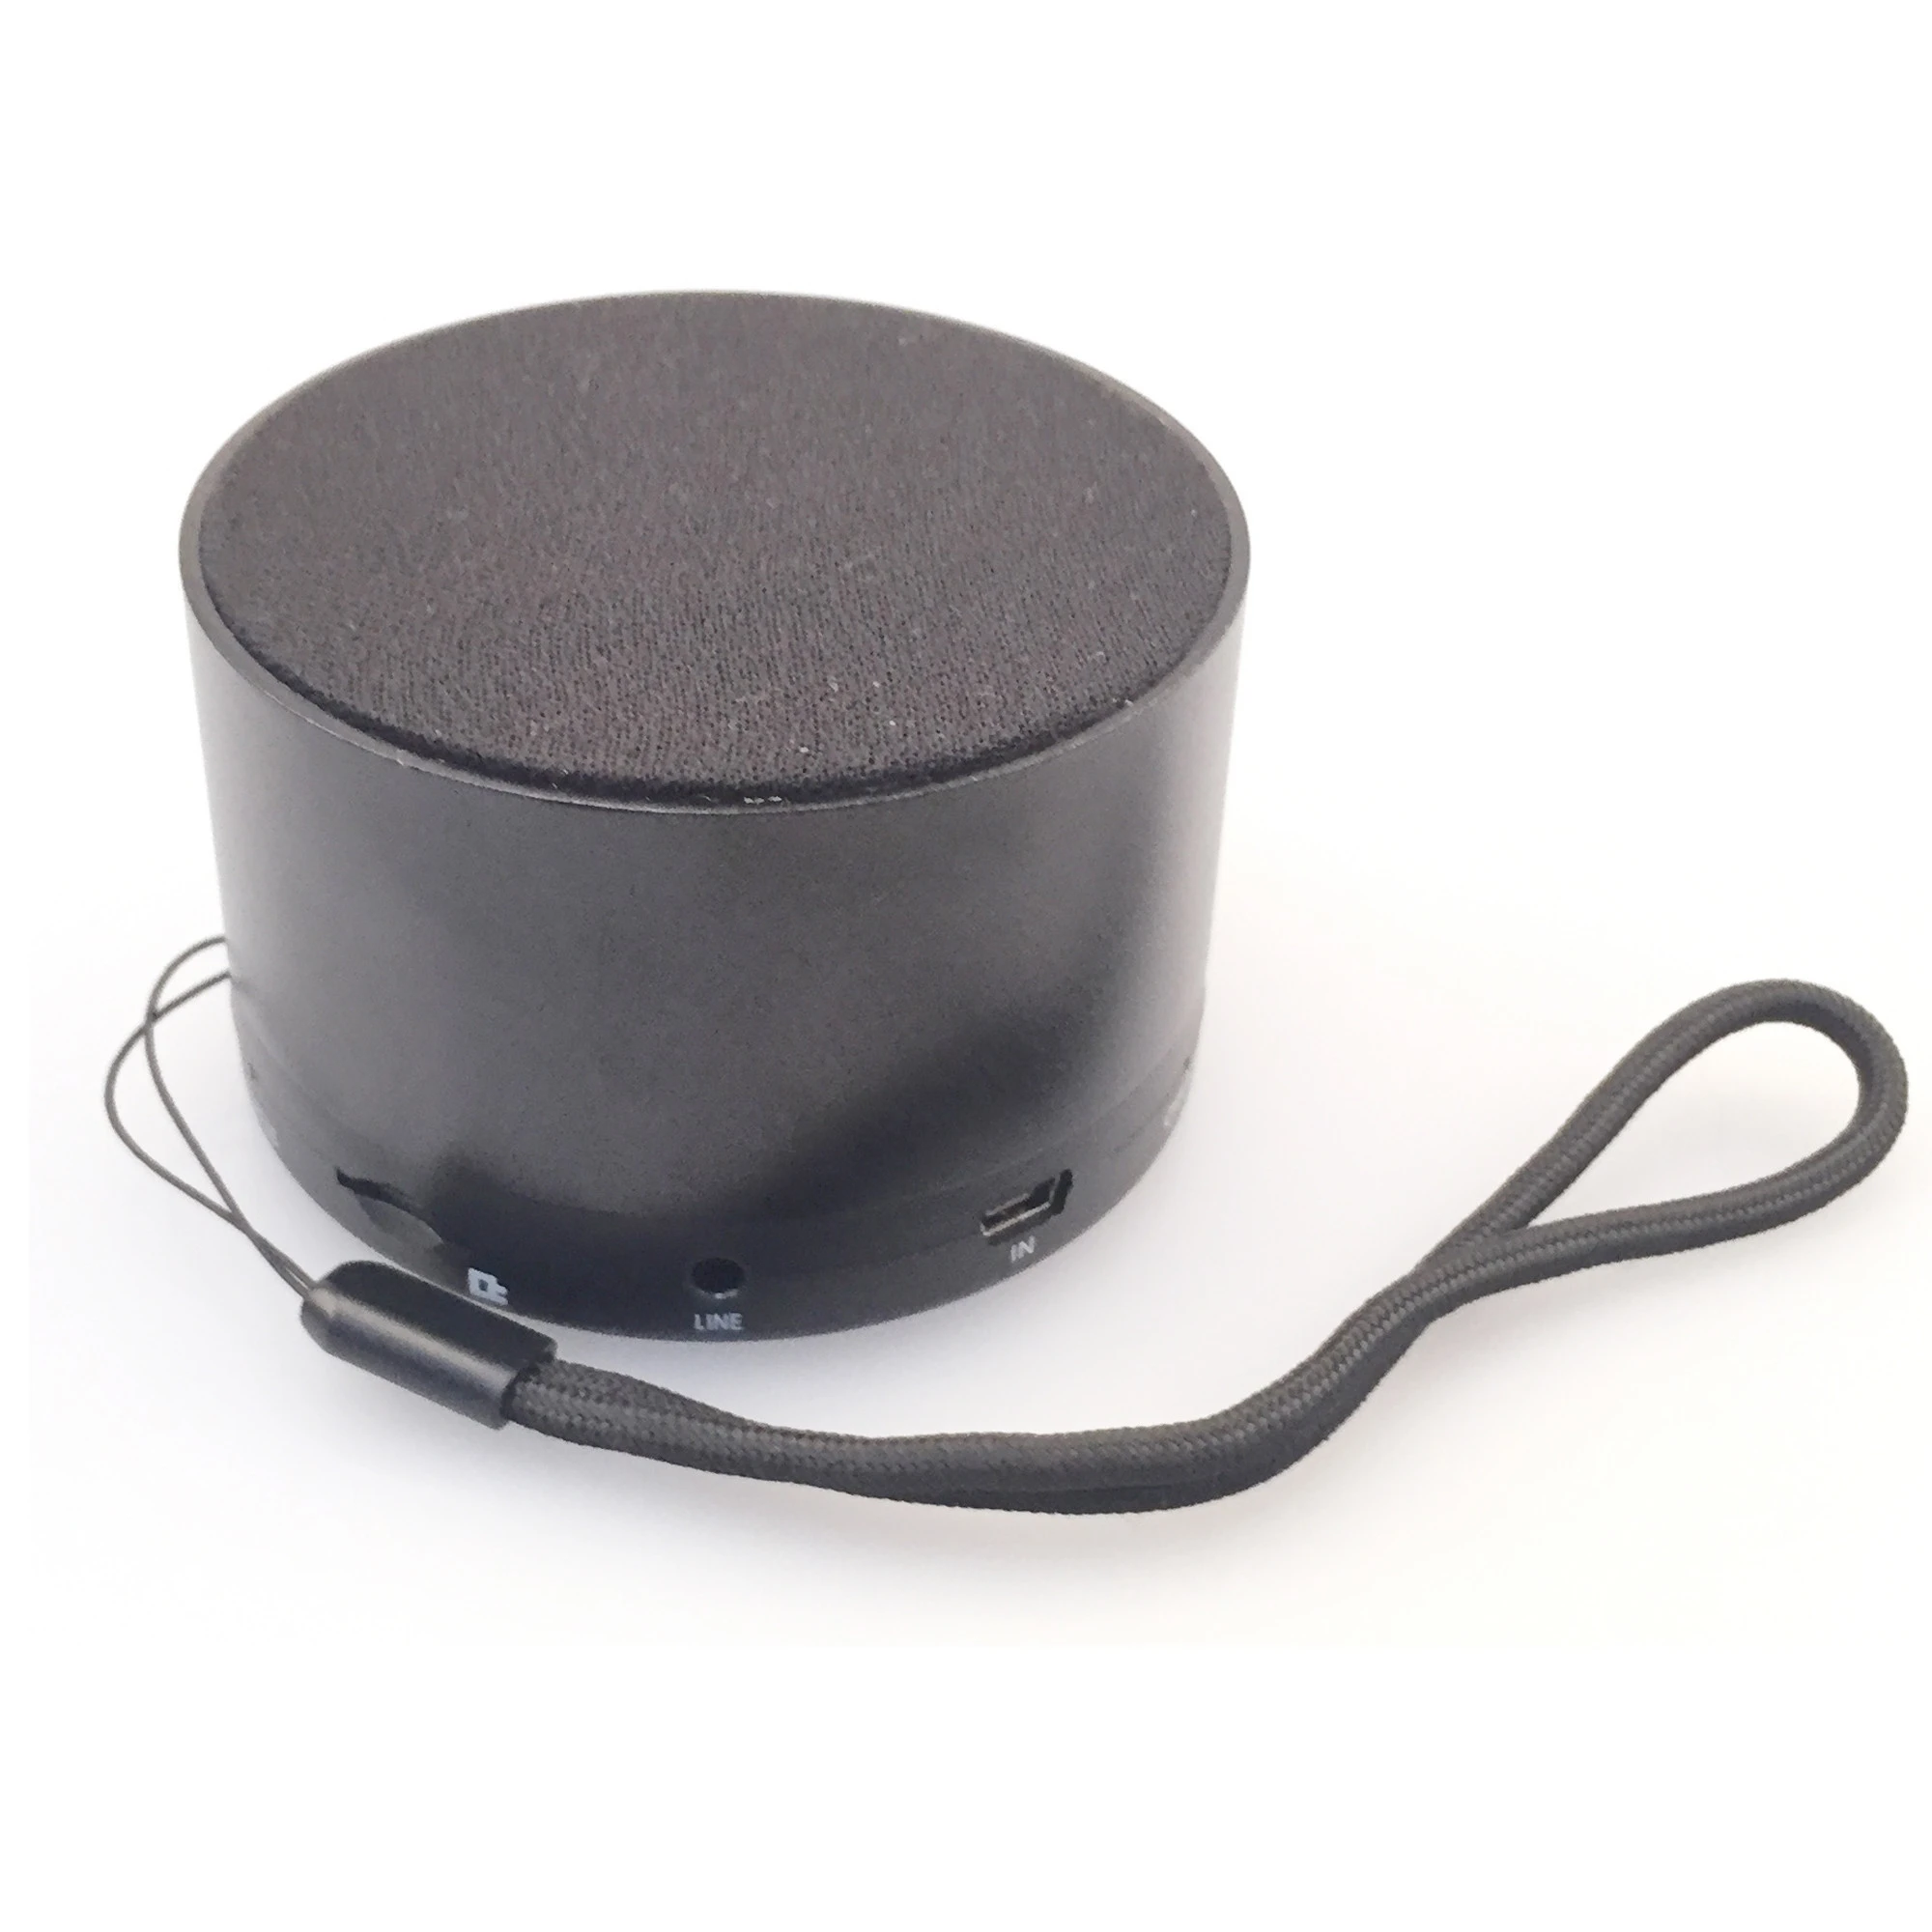 Cool gadgets 2020 led bluetooth speaker bulb bluetooth speaker with fm radio bluetooth speaker